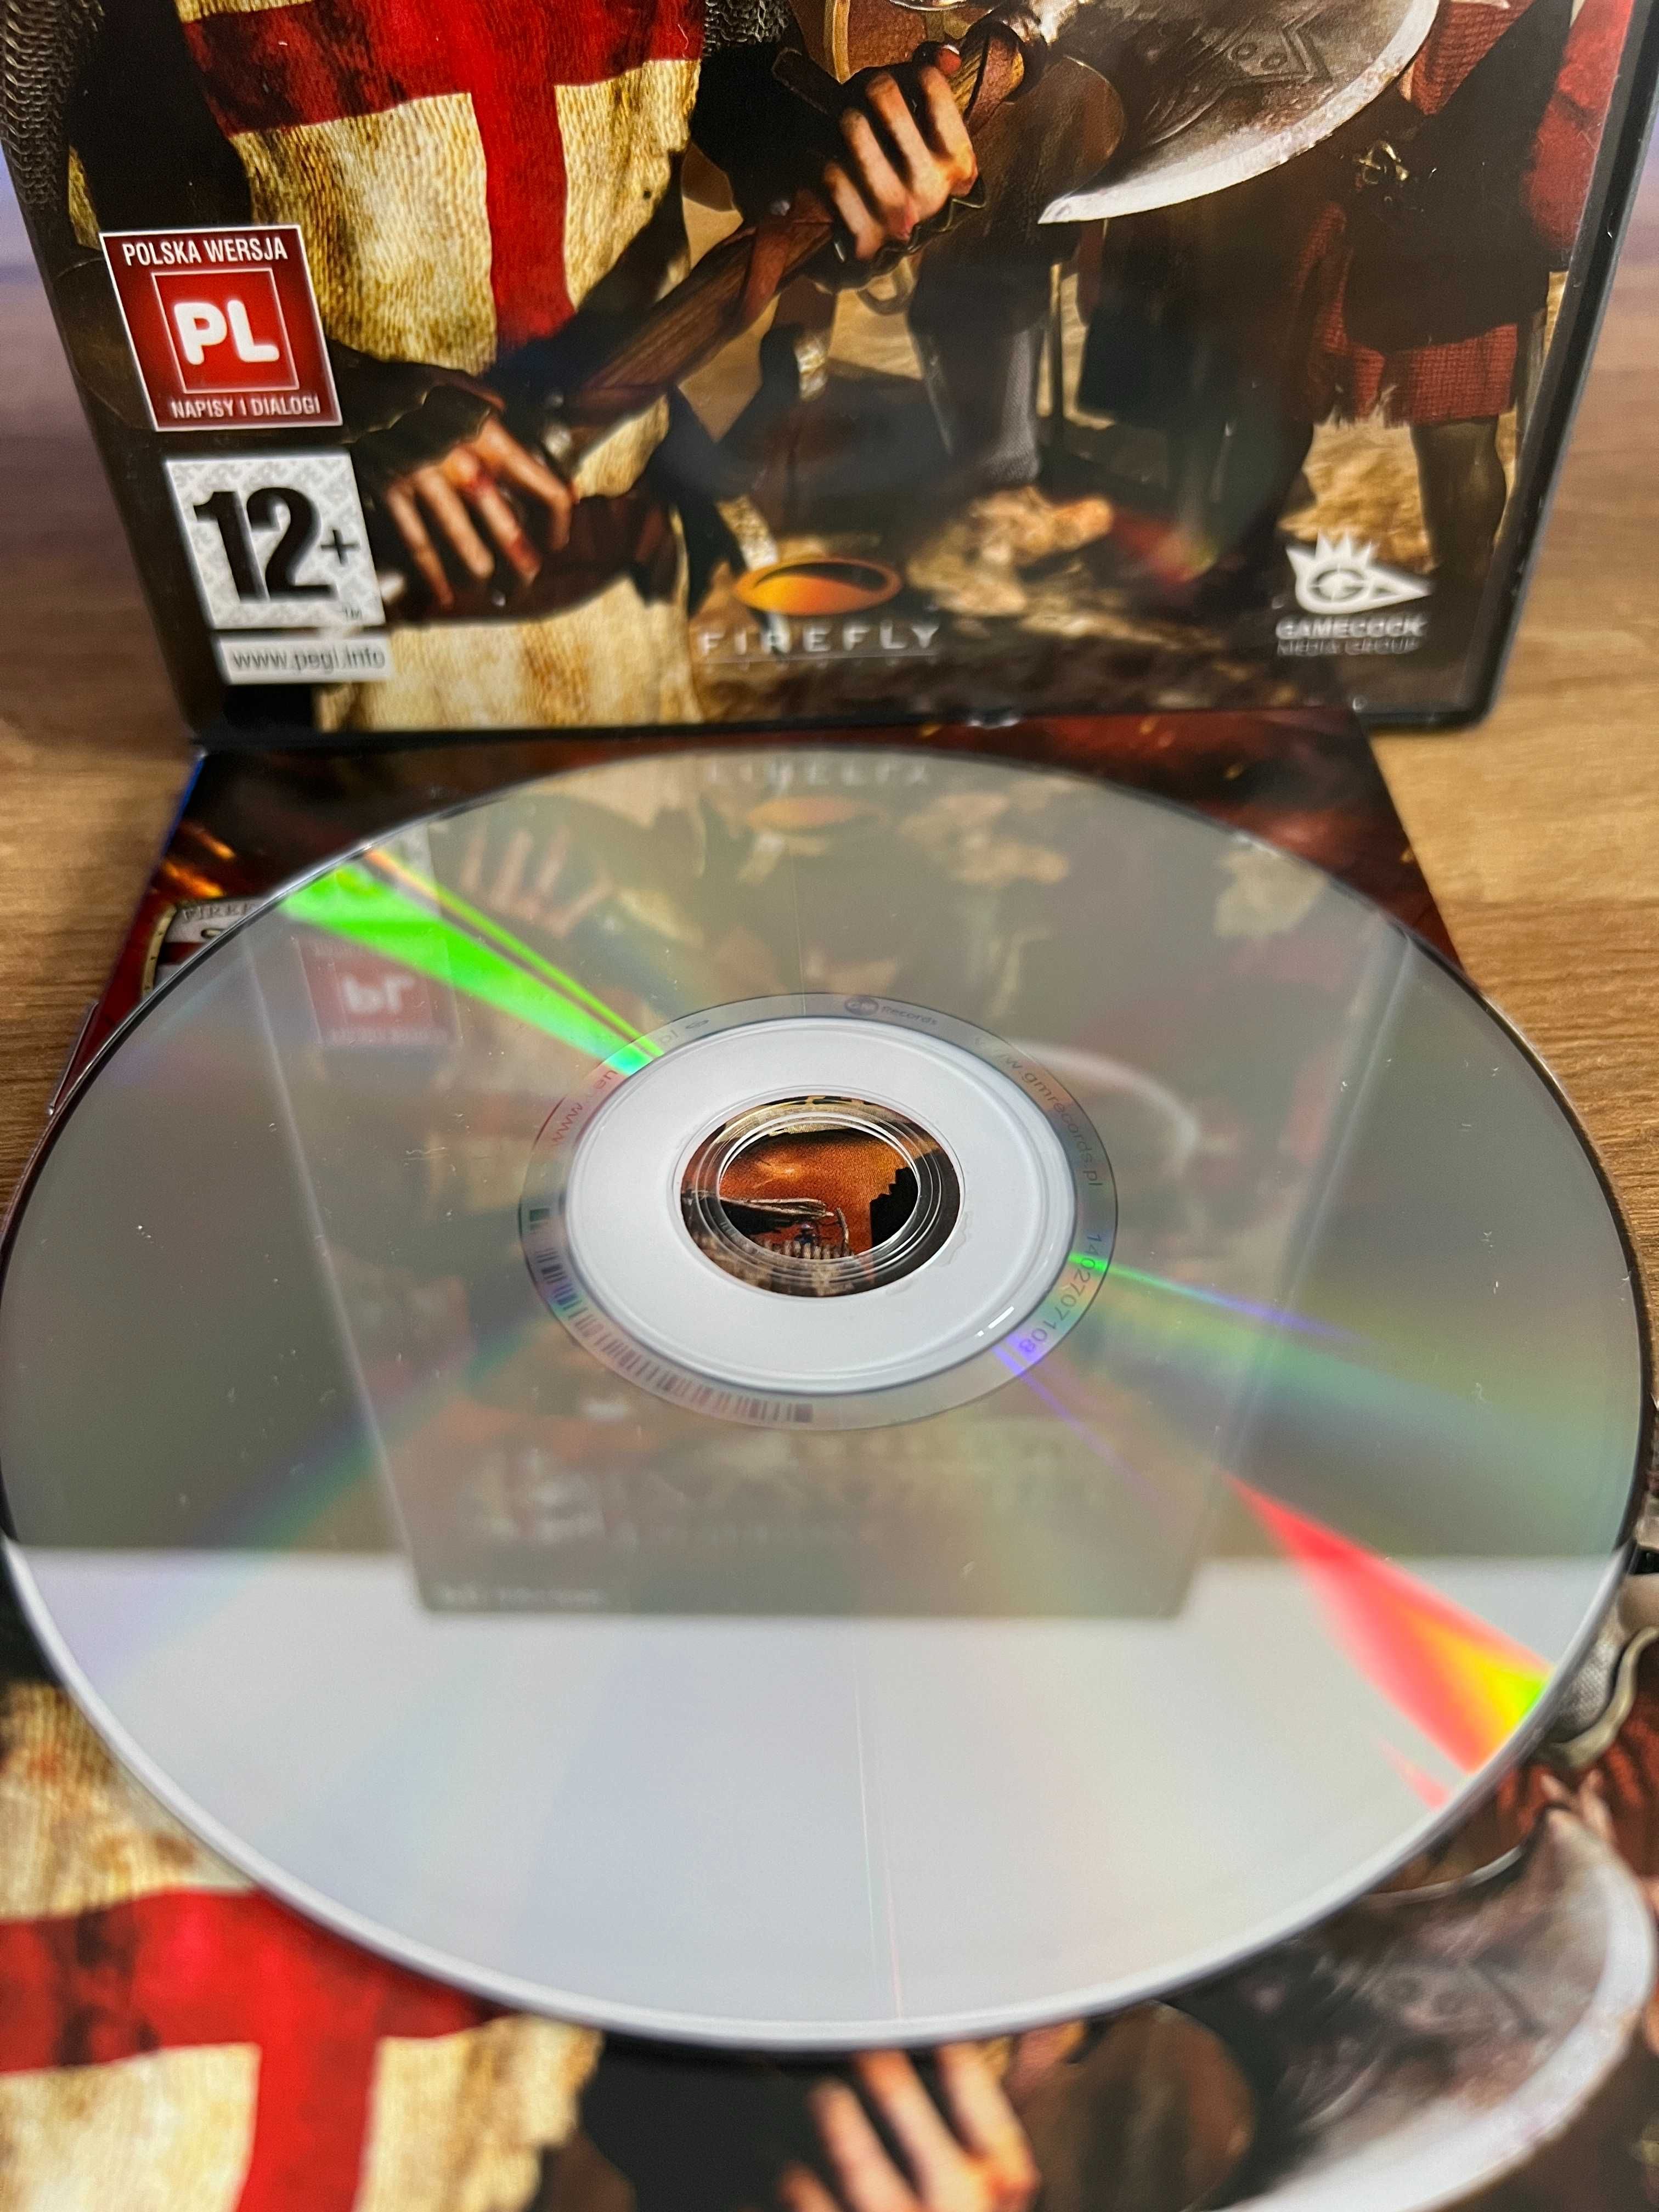 Twierdza Krzyżowiec Extreme (PC PL 2008) DVD BOX premierowe wydanie